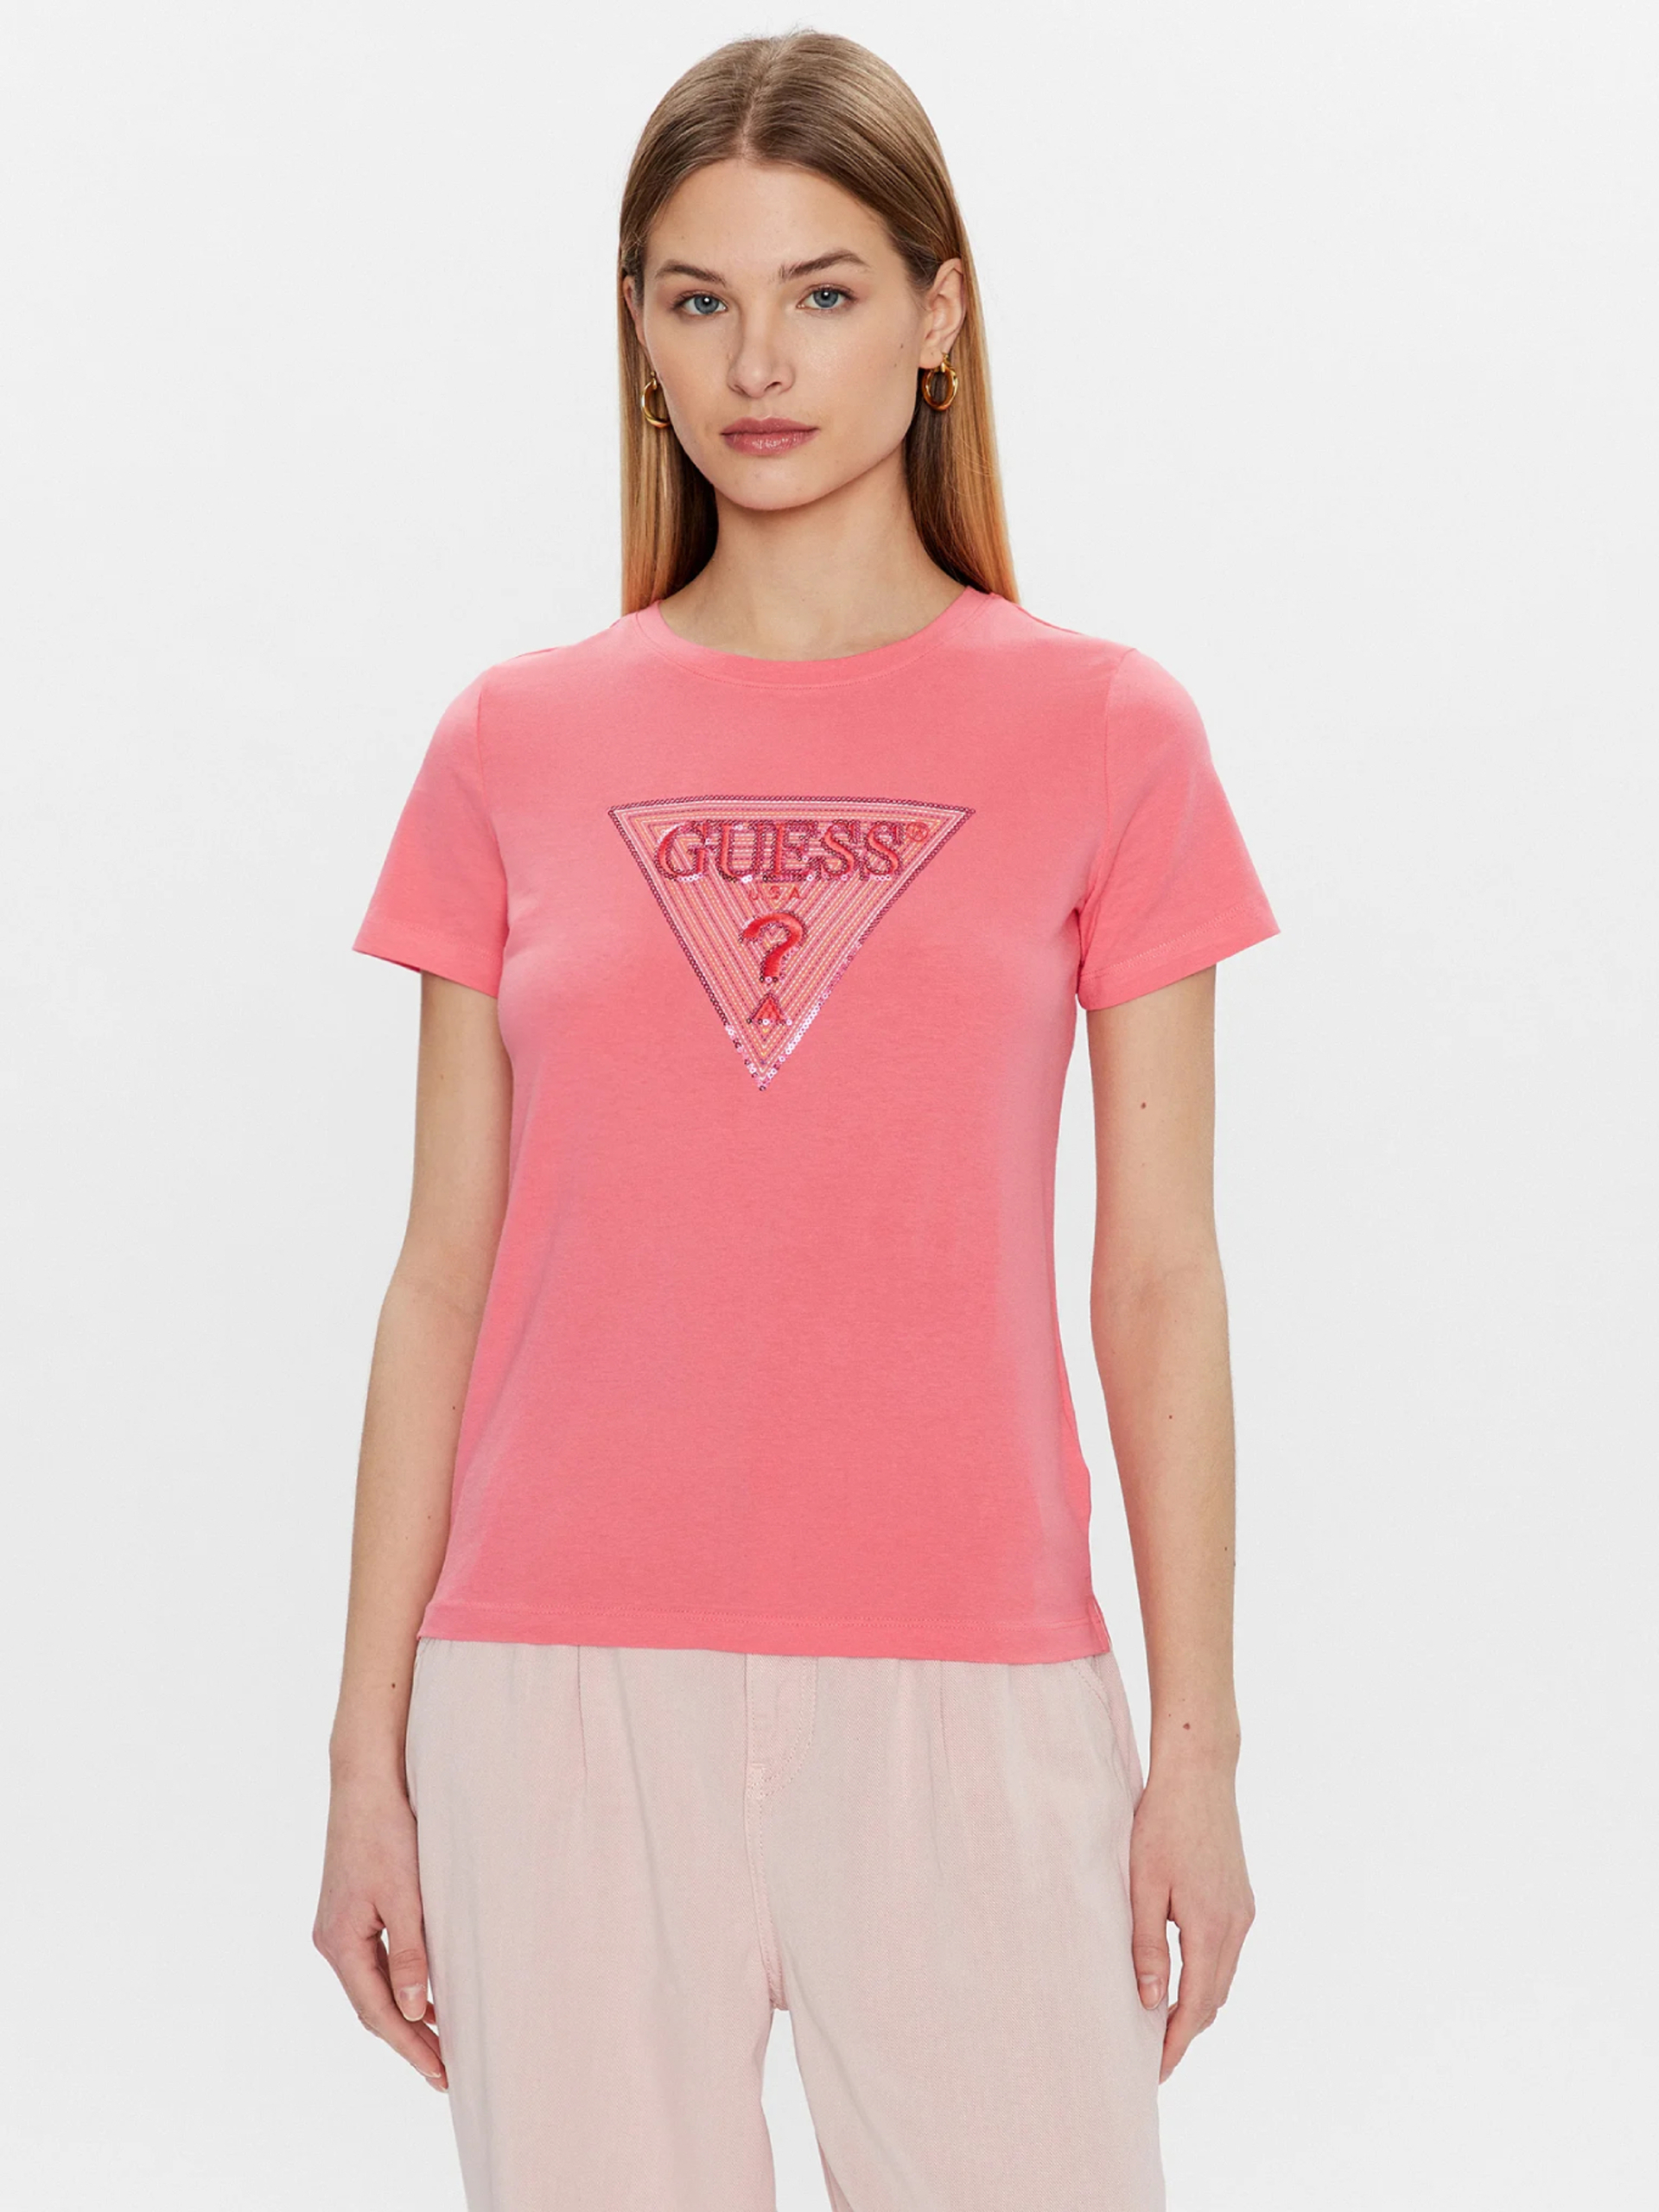 Guess dámské růžové tričko - XS (A60Y)